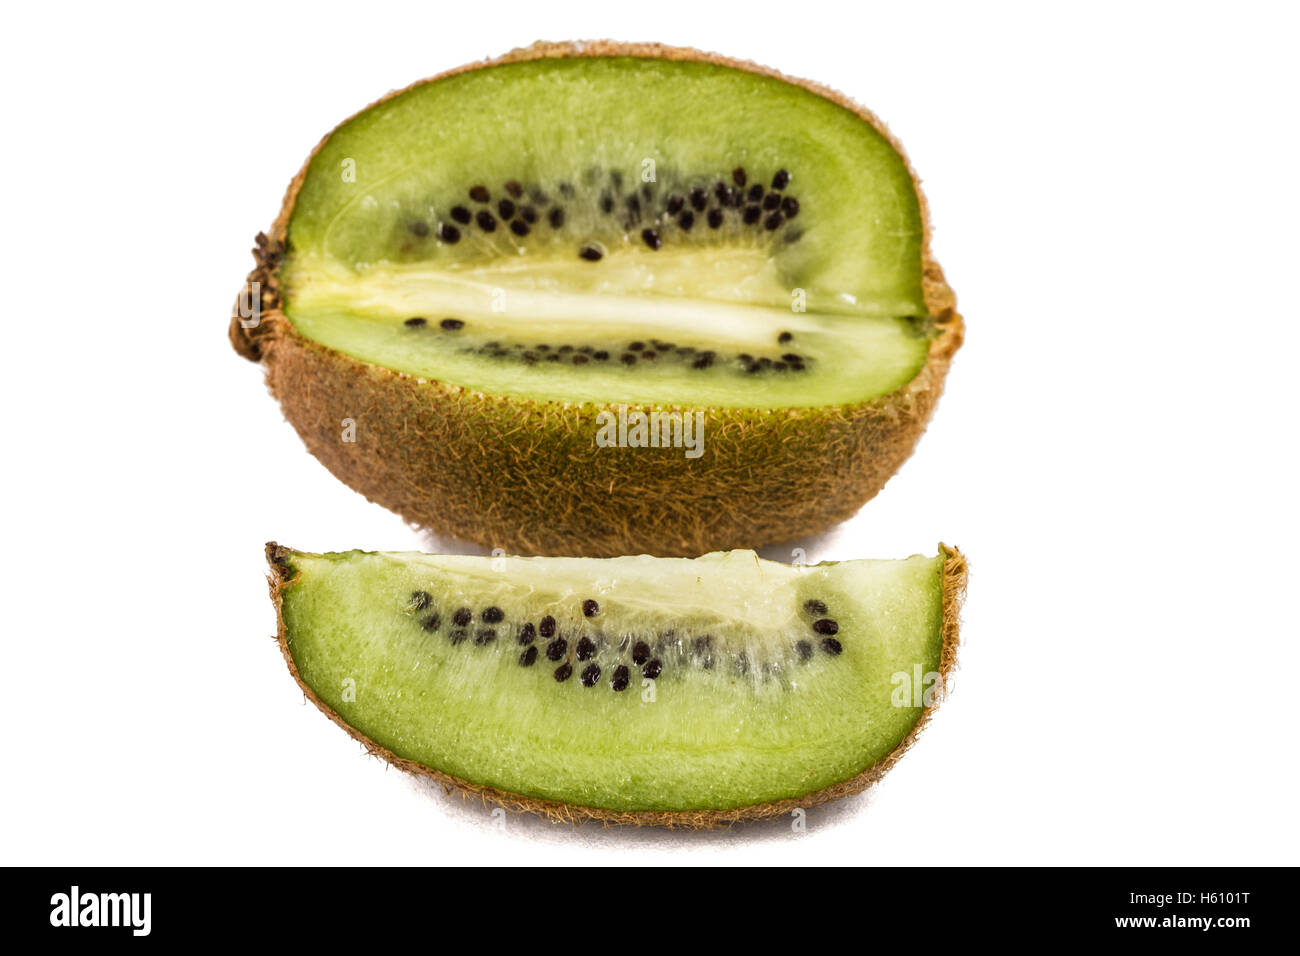 Slice of fresh kiwi fruit isolated on white background Stock Photo